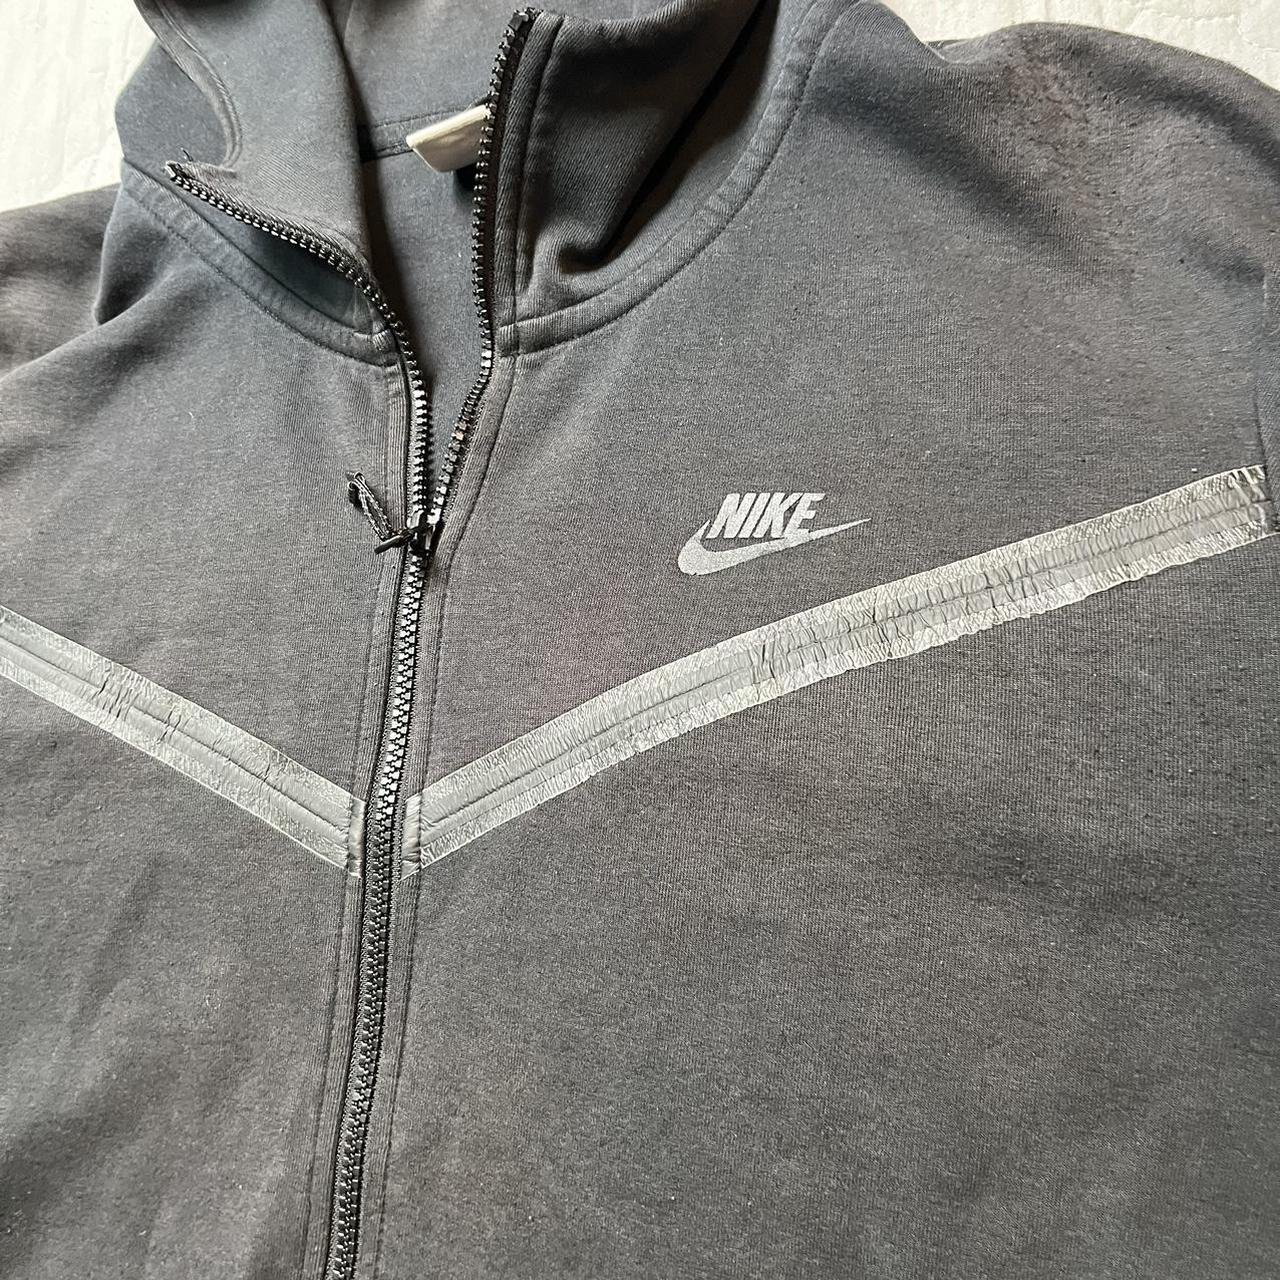 Worn Nike Tech Fleece Hoodie Size XL Streetwear Fade... - Depop